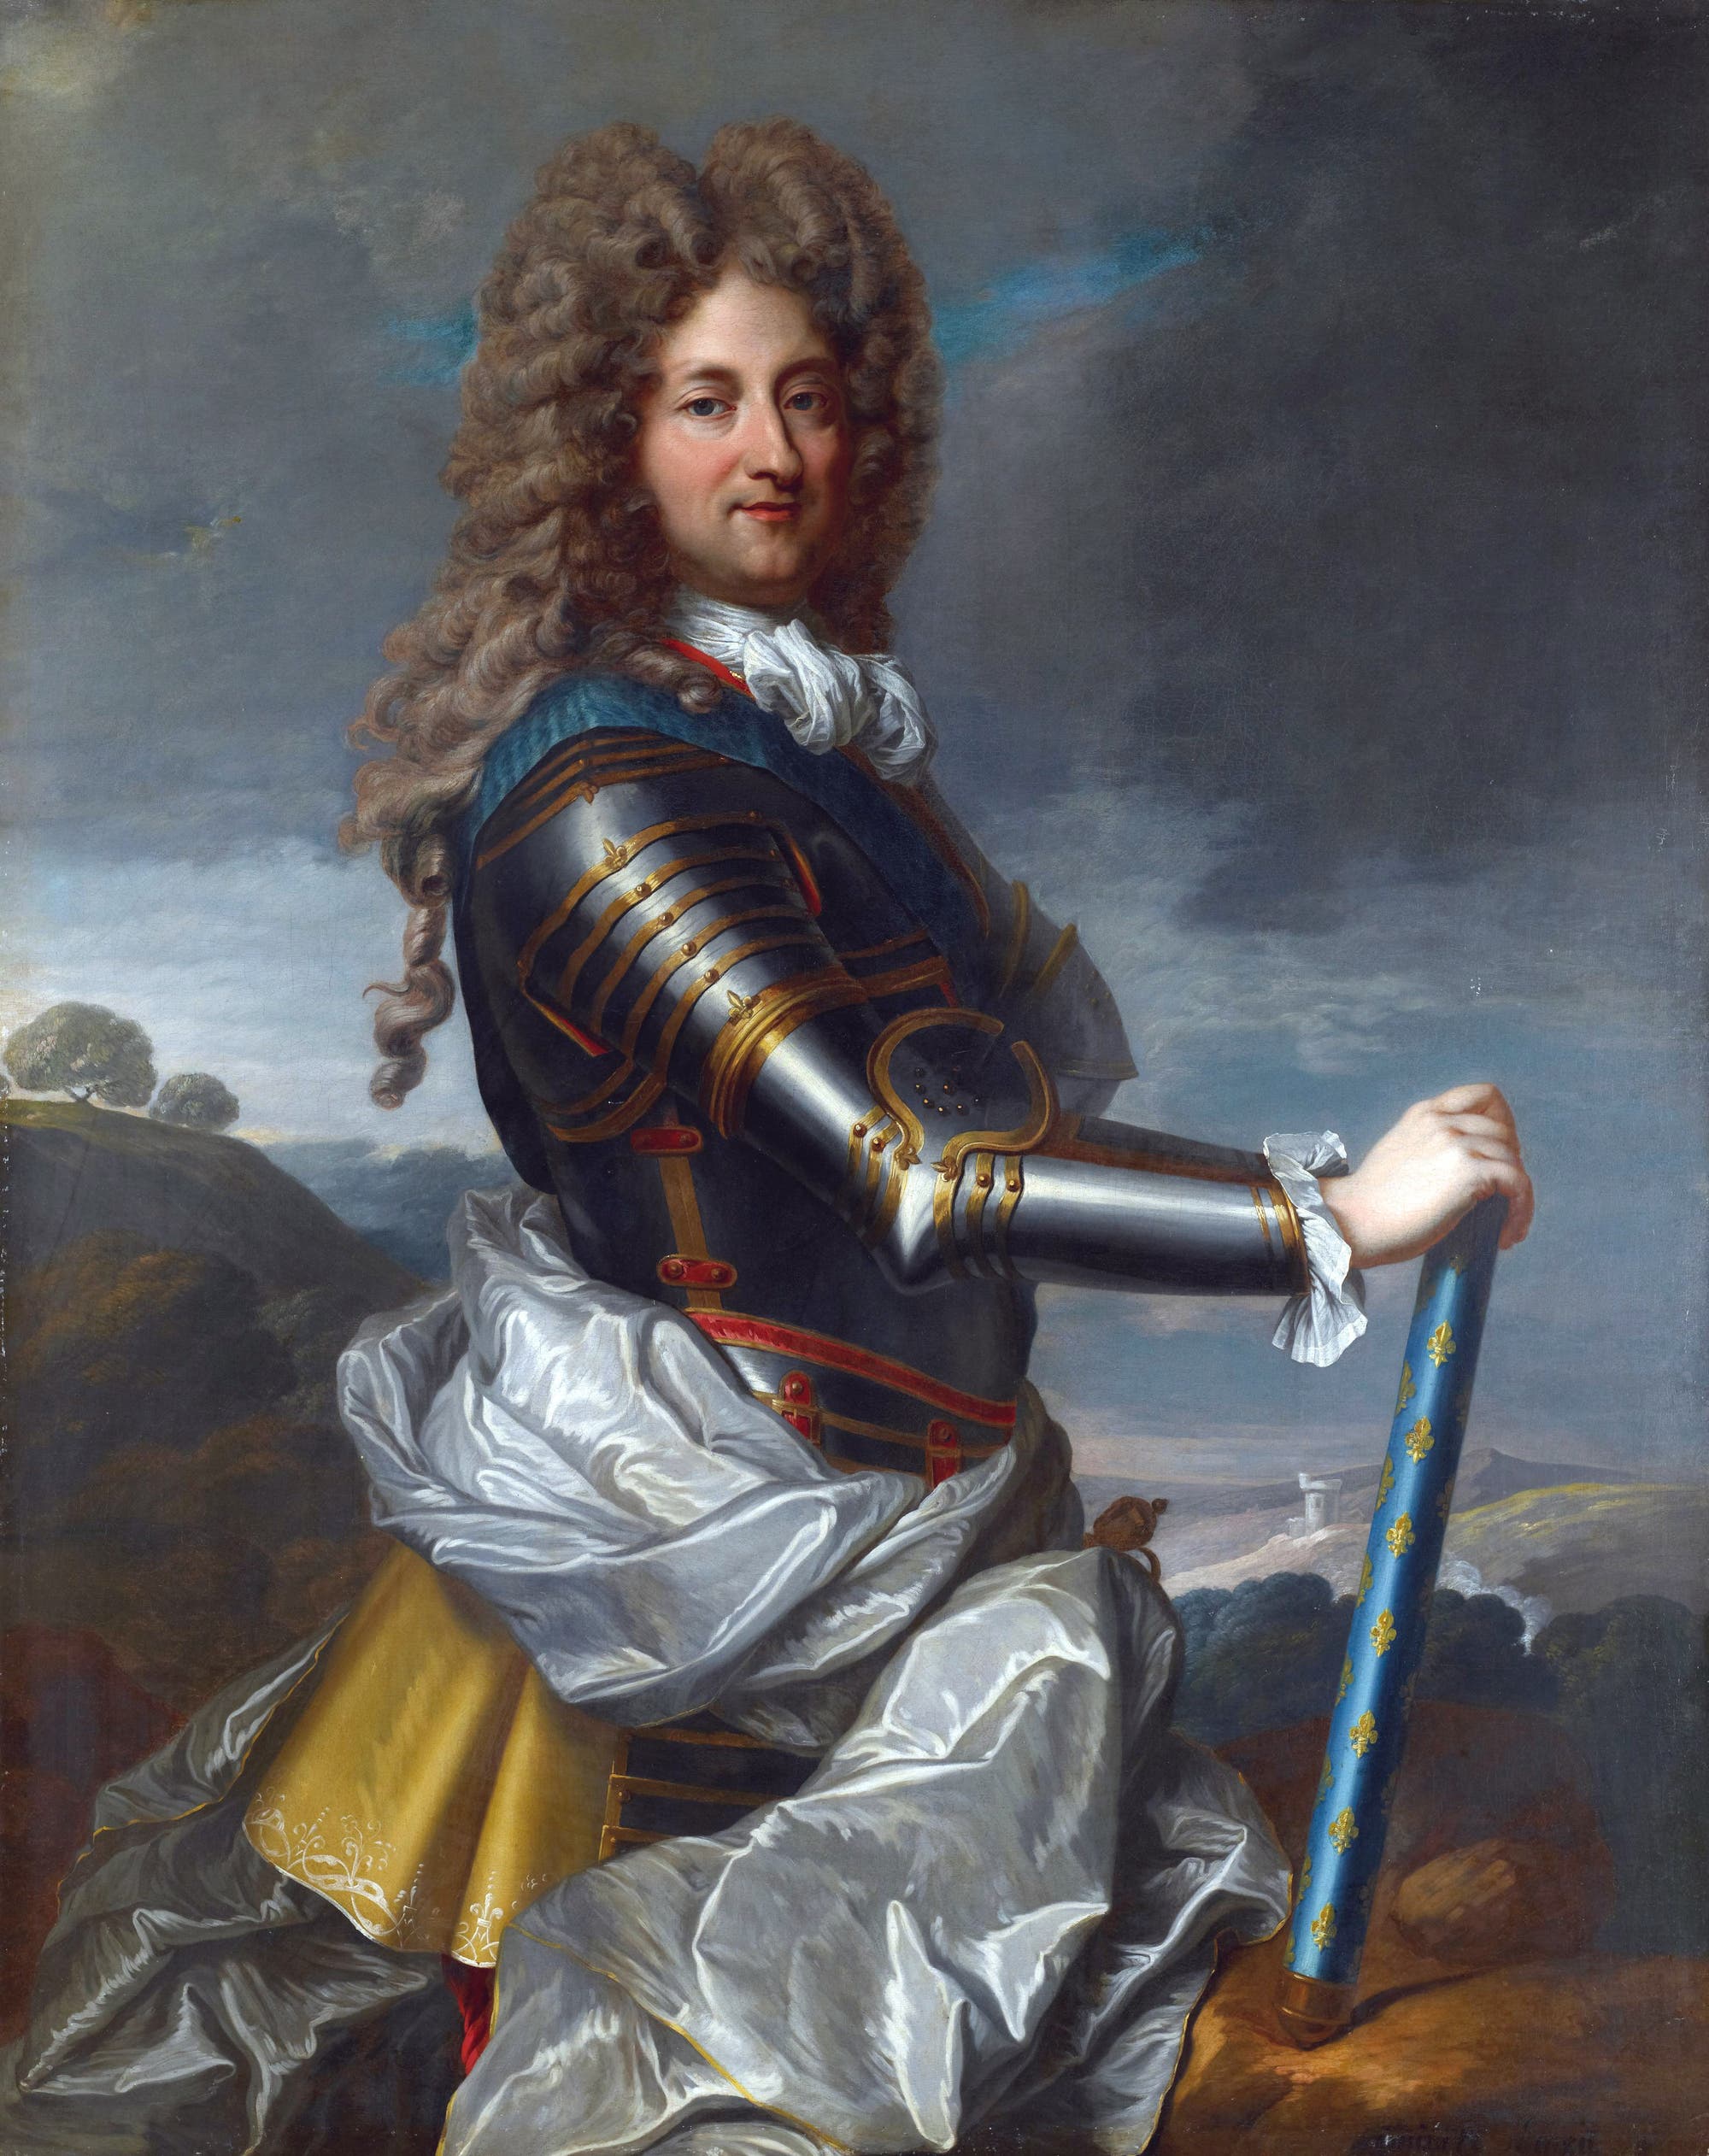 Porträt von Philippe II., Herzog von Orléans. Das Bild malte Jean-Baptiste Santerre um 1715.